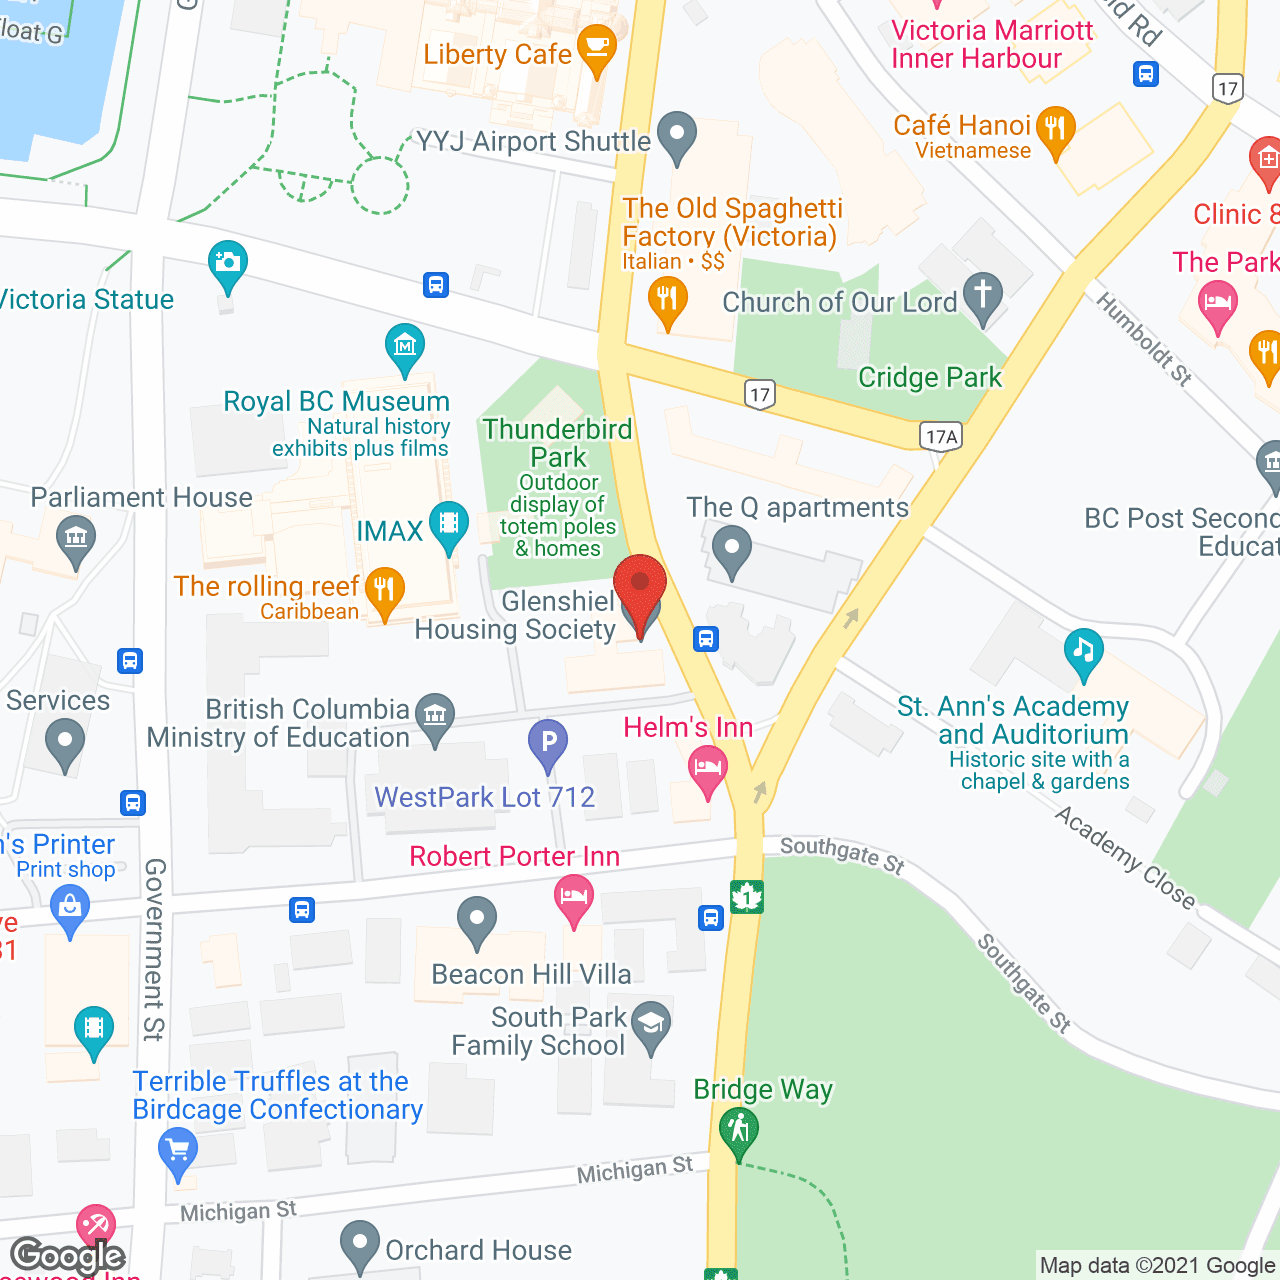 Glenshiel Retirement Residence in google map